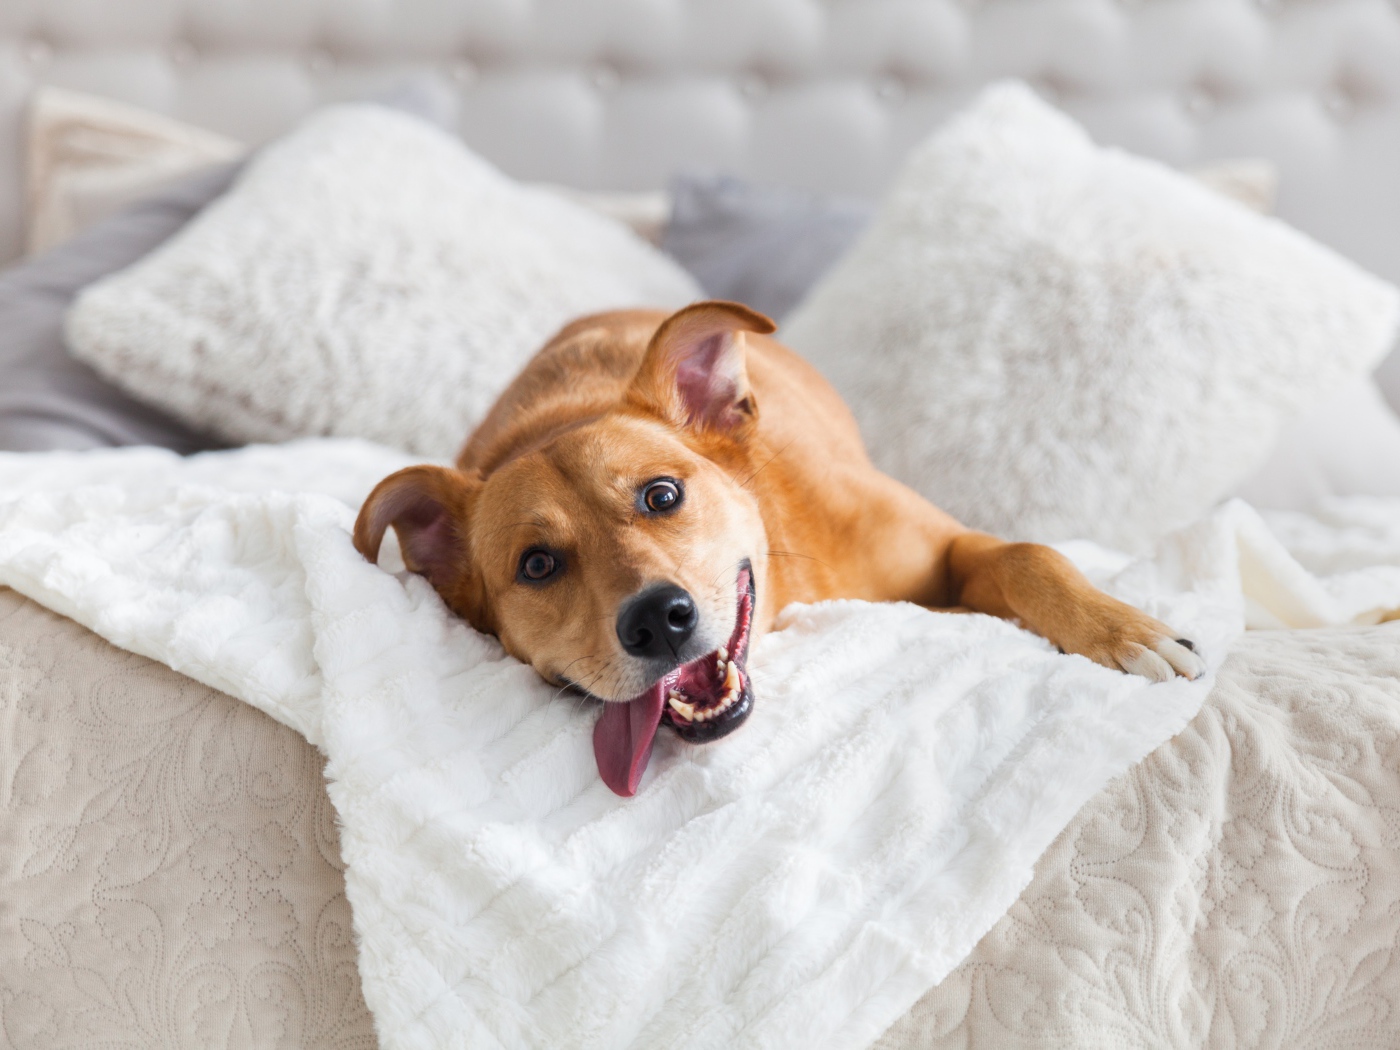 Довольный пес с высунутым языком лежит на белой кровати 